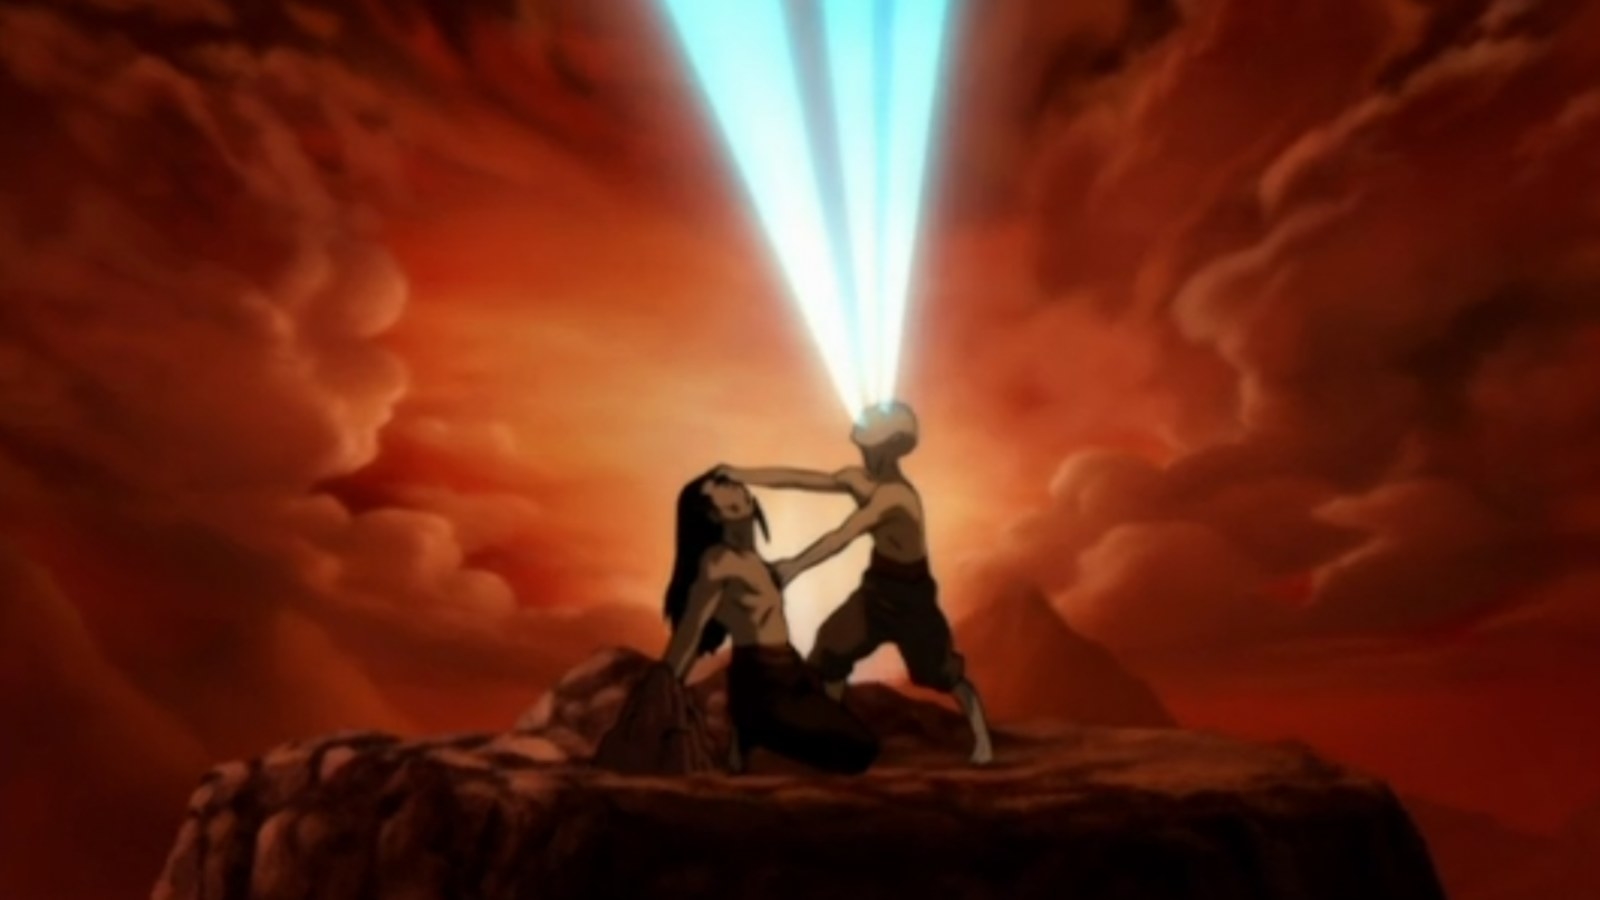 Aang fighting Ozai